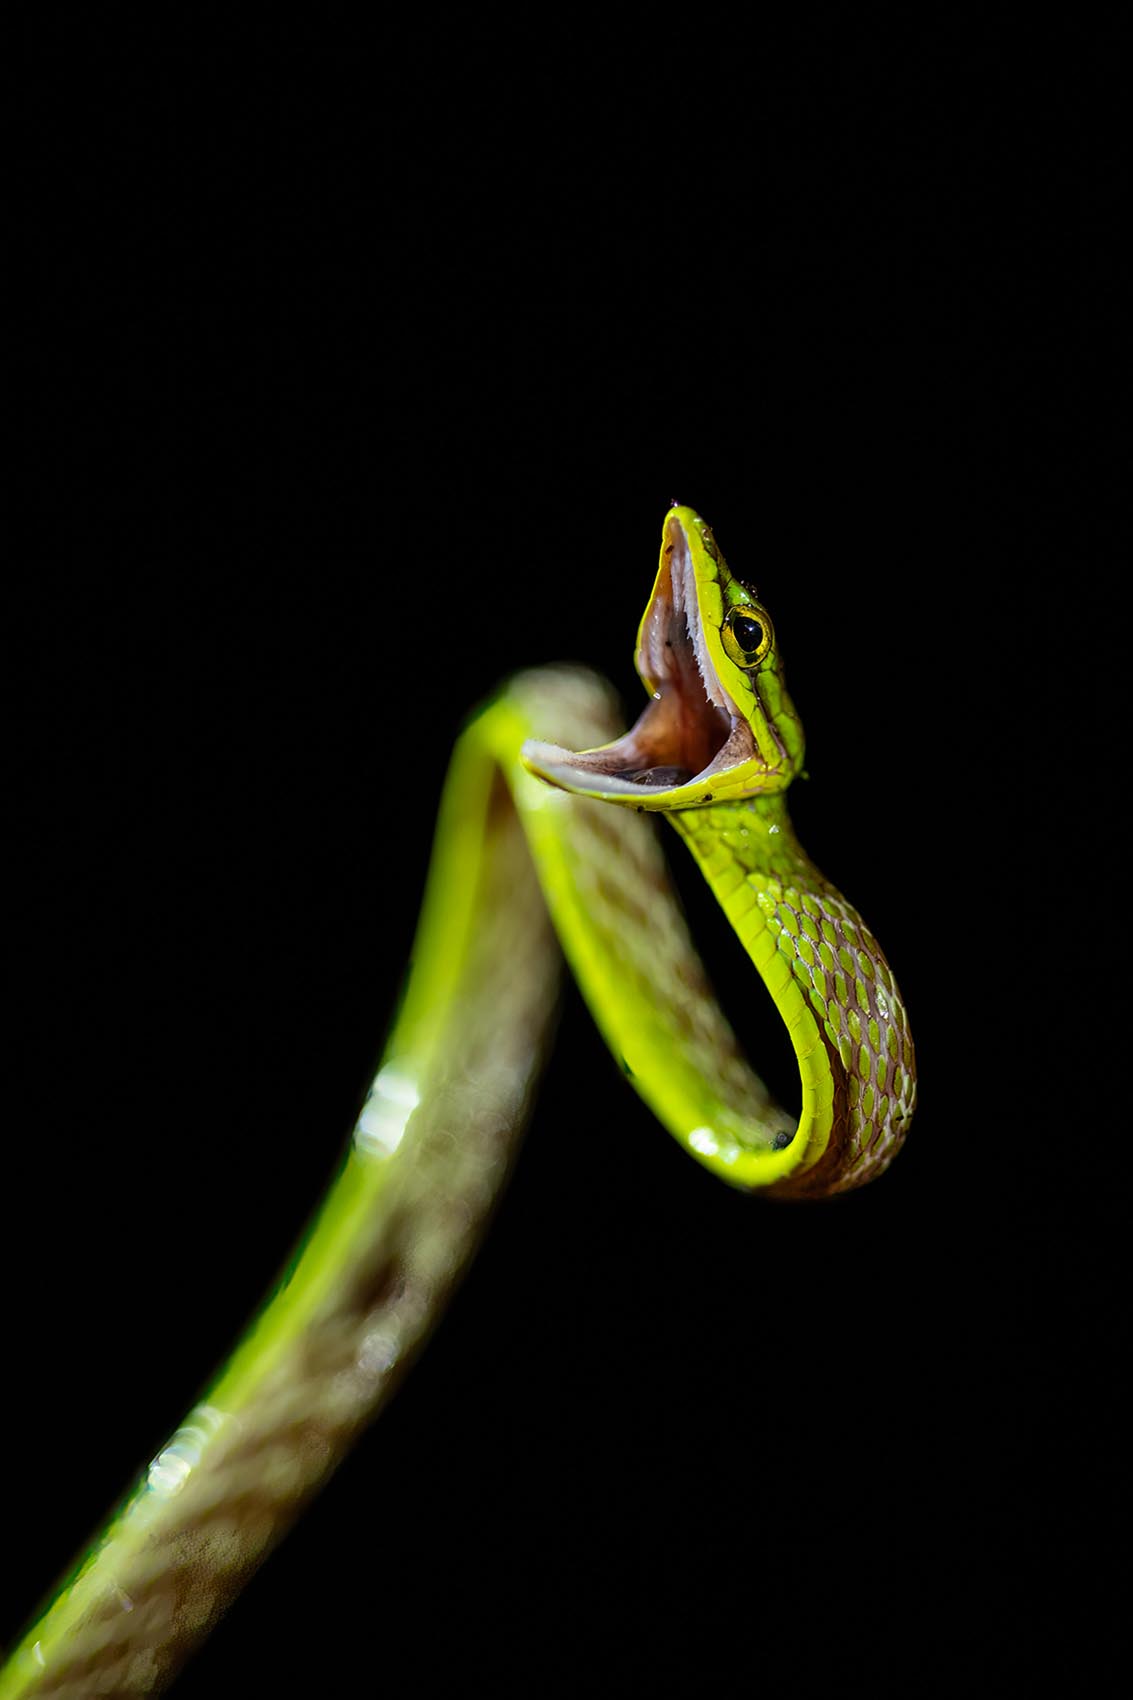 vine_snake_mashpi_amagusa_reptile_venom_wildlife_photography_ecuador_south_america